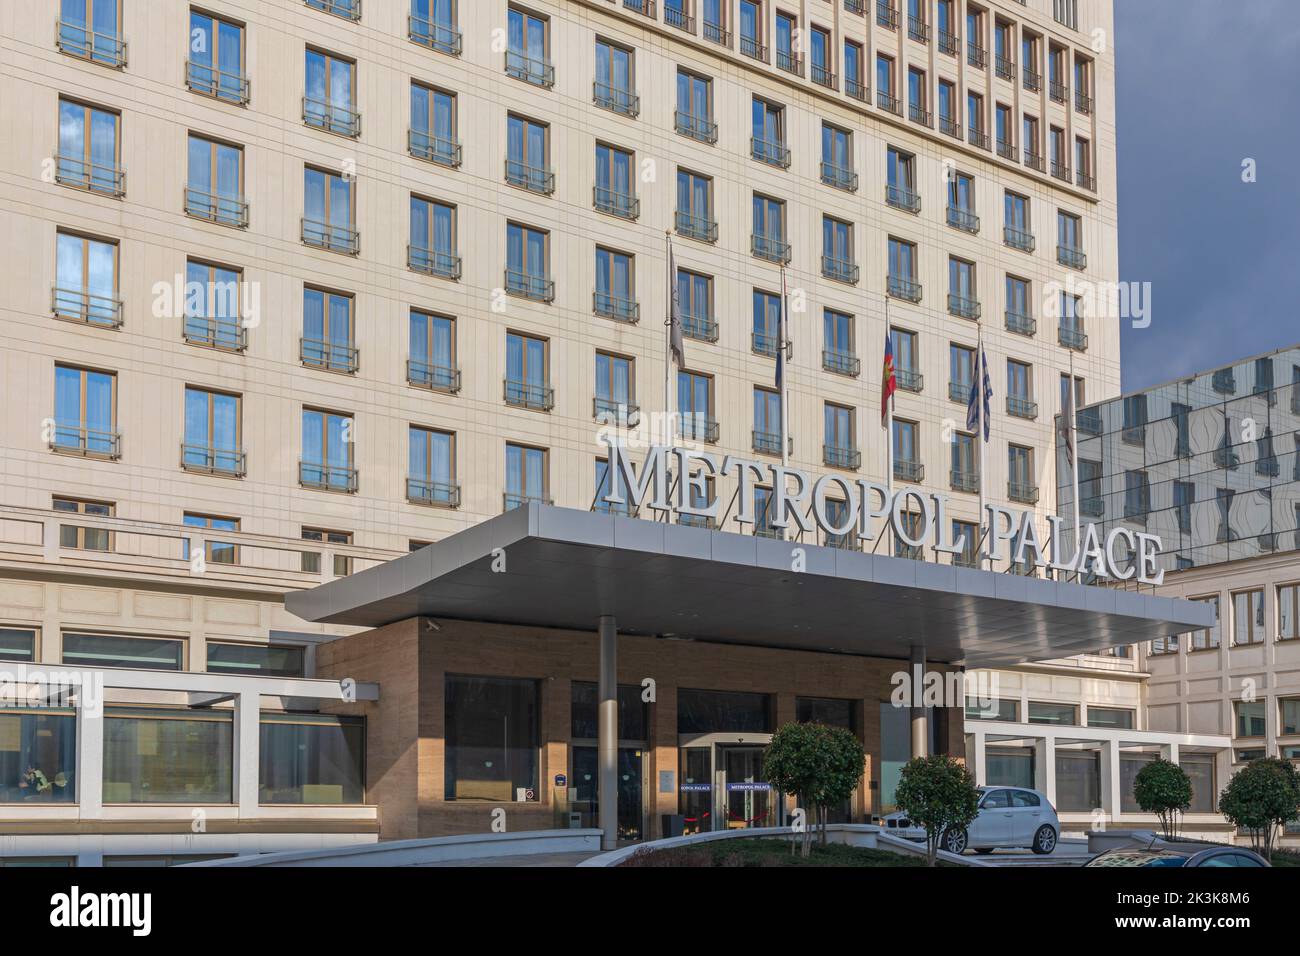 Belgrado, Serbia - 14 de febrero de 2021: Edificio histórico del hotel Metropol Palace en la capital, en el día soleado de invierno. Foto de stock